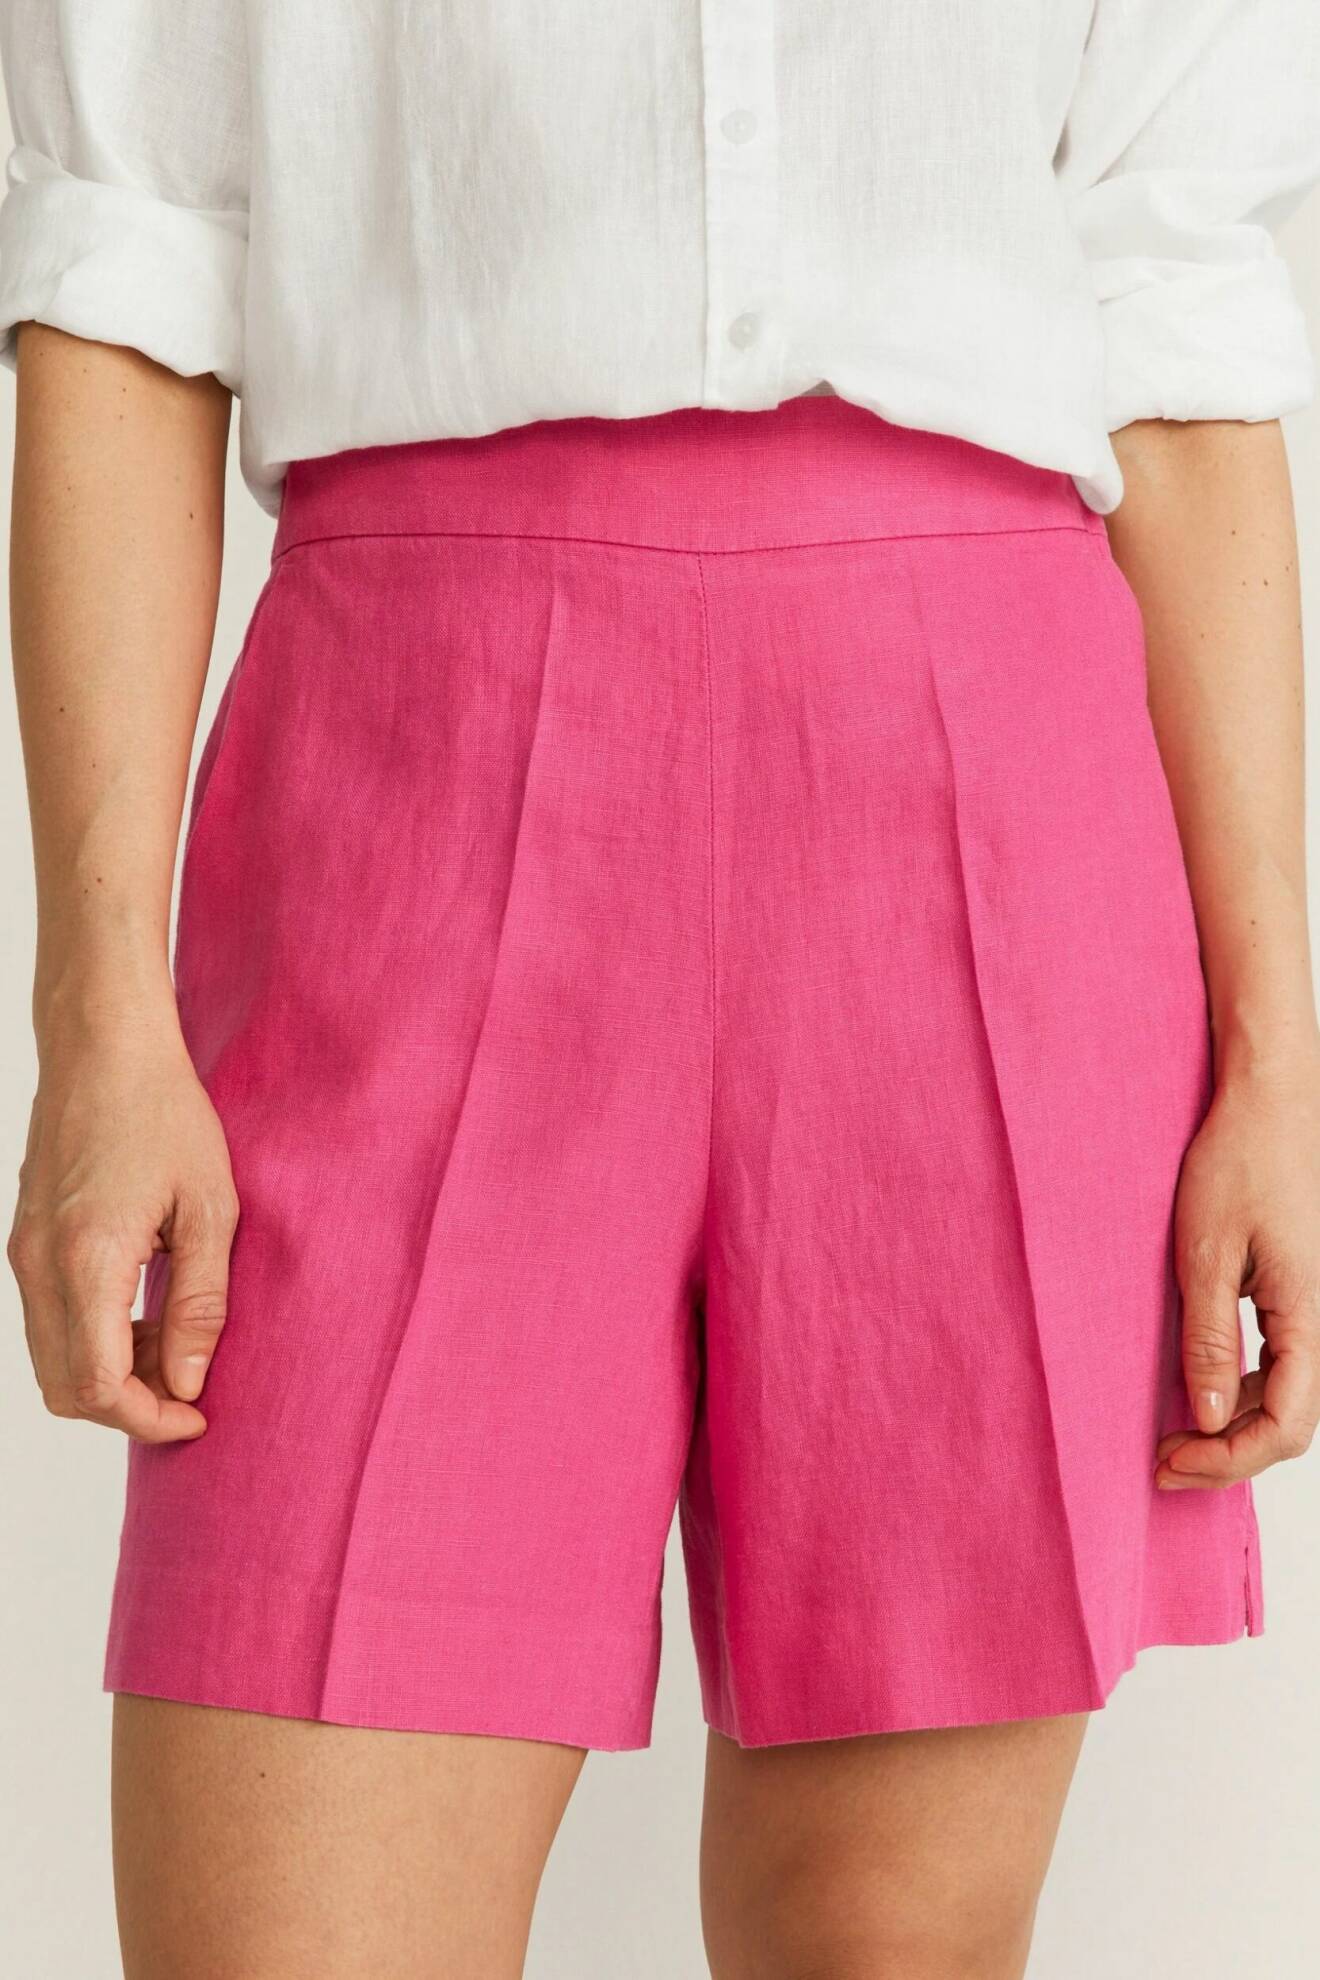 rosa shorts i linne med pressveck och vida ben för dam